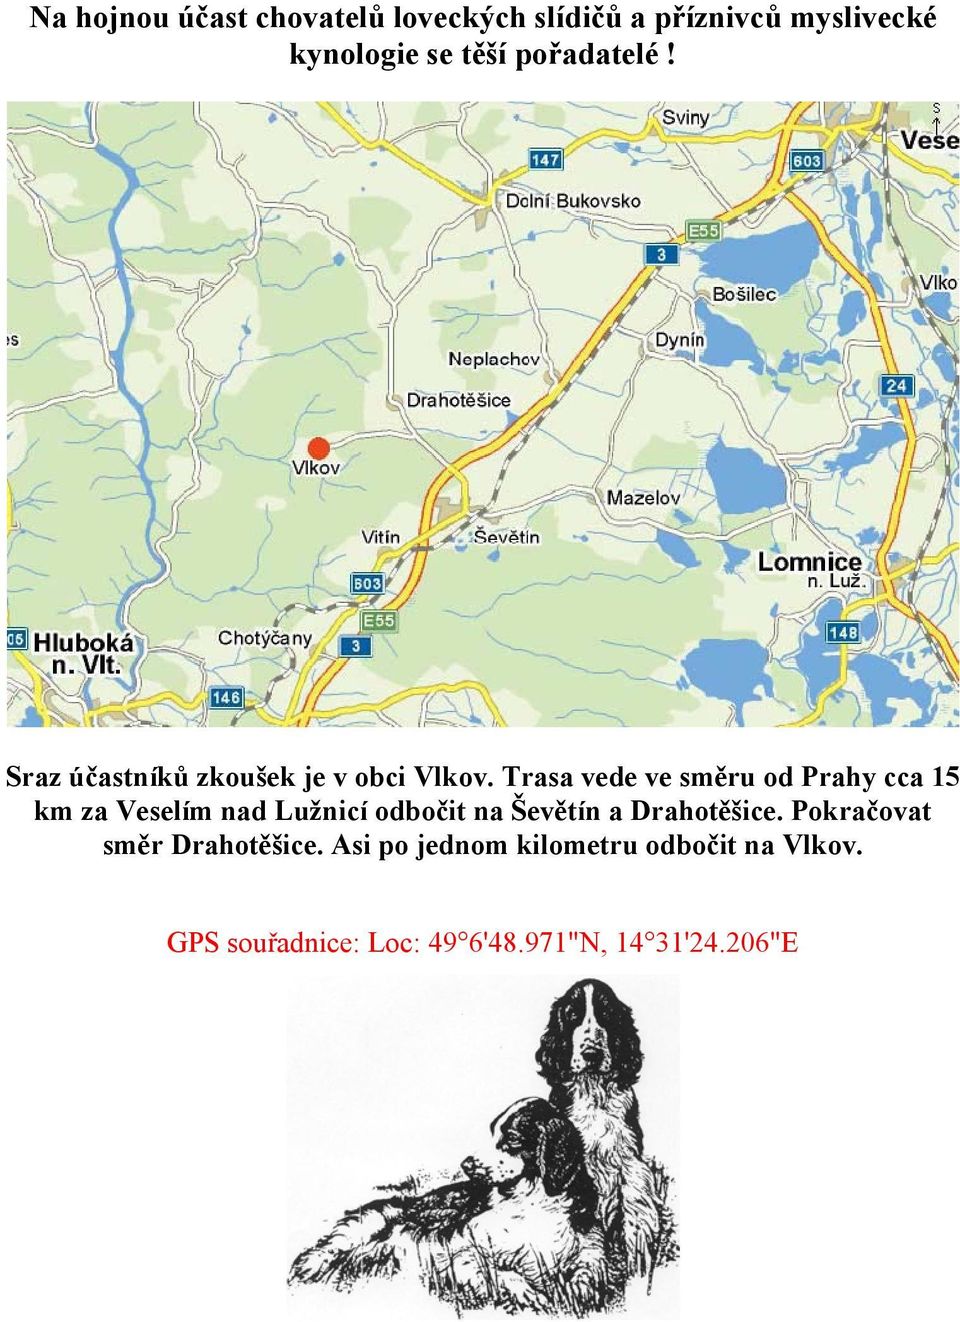 Trasa vede ve směru od Prahy cca 15 km za Veselím nad Lužnicí odbočit na Ševětín a